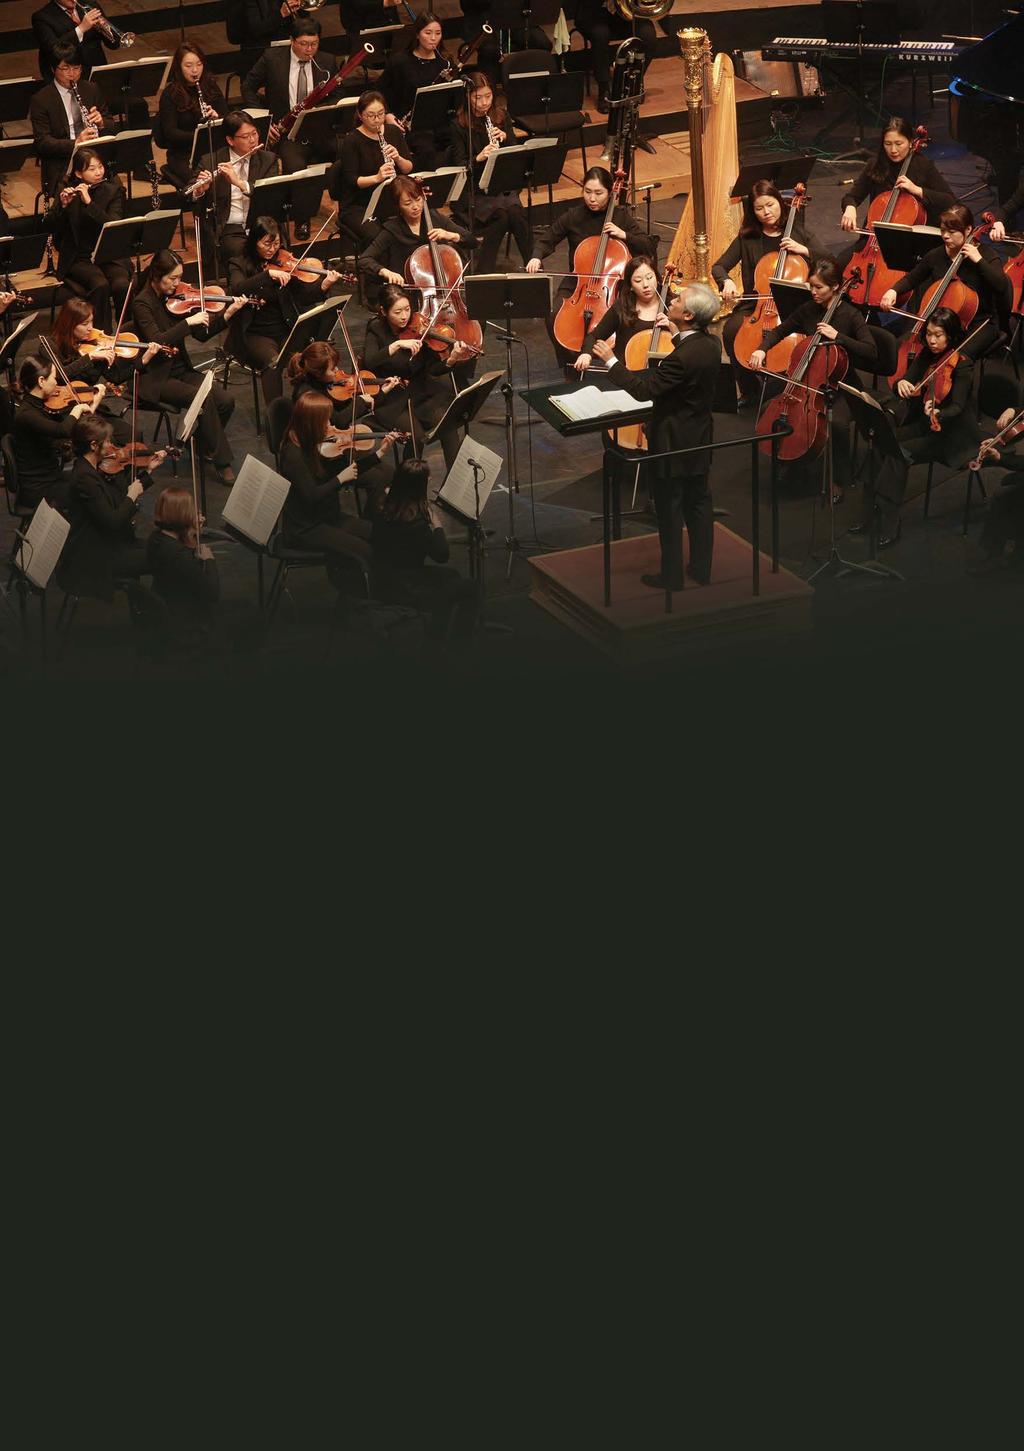 하반기프로그램북 창원시립교향악단 창원시립교향악단 Changwon Philharmonic Orchestra 창원시립교향악단은 2010년 7월통합창원시로출범됨에따라 2012년부터새롭게탄생한한국최초의통합교향악단이다.